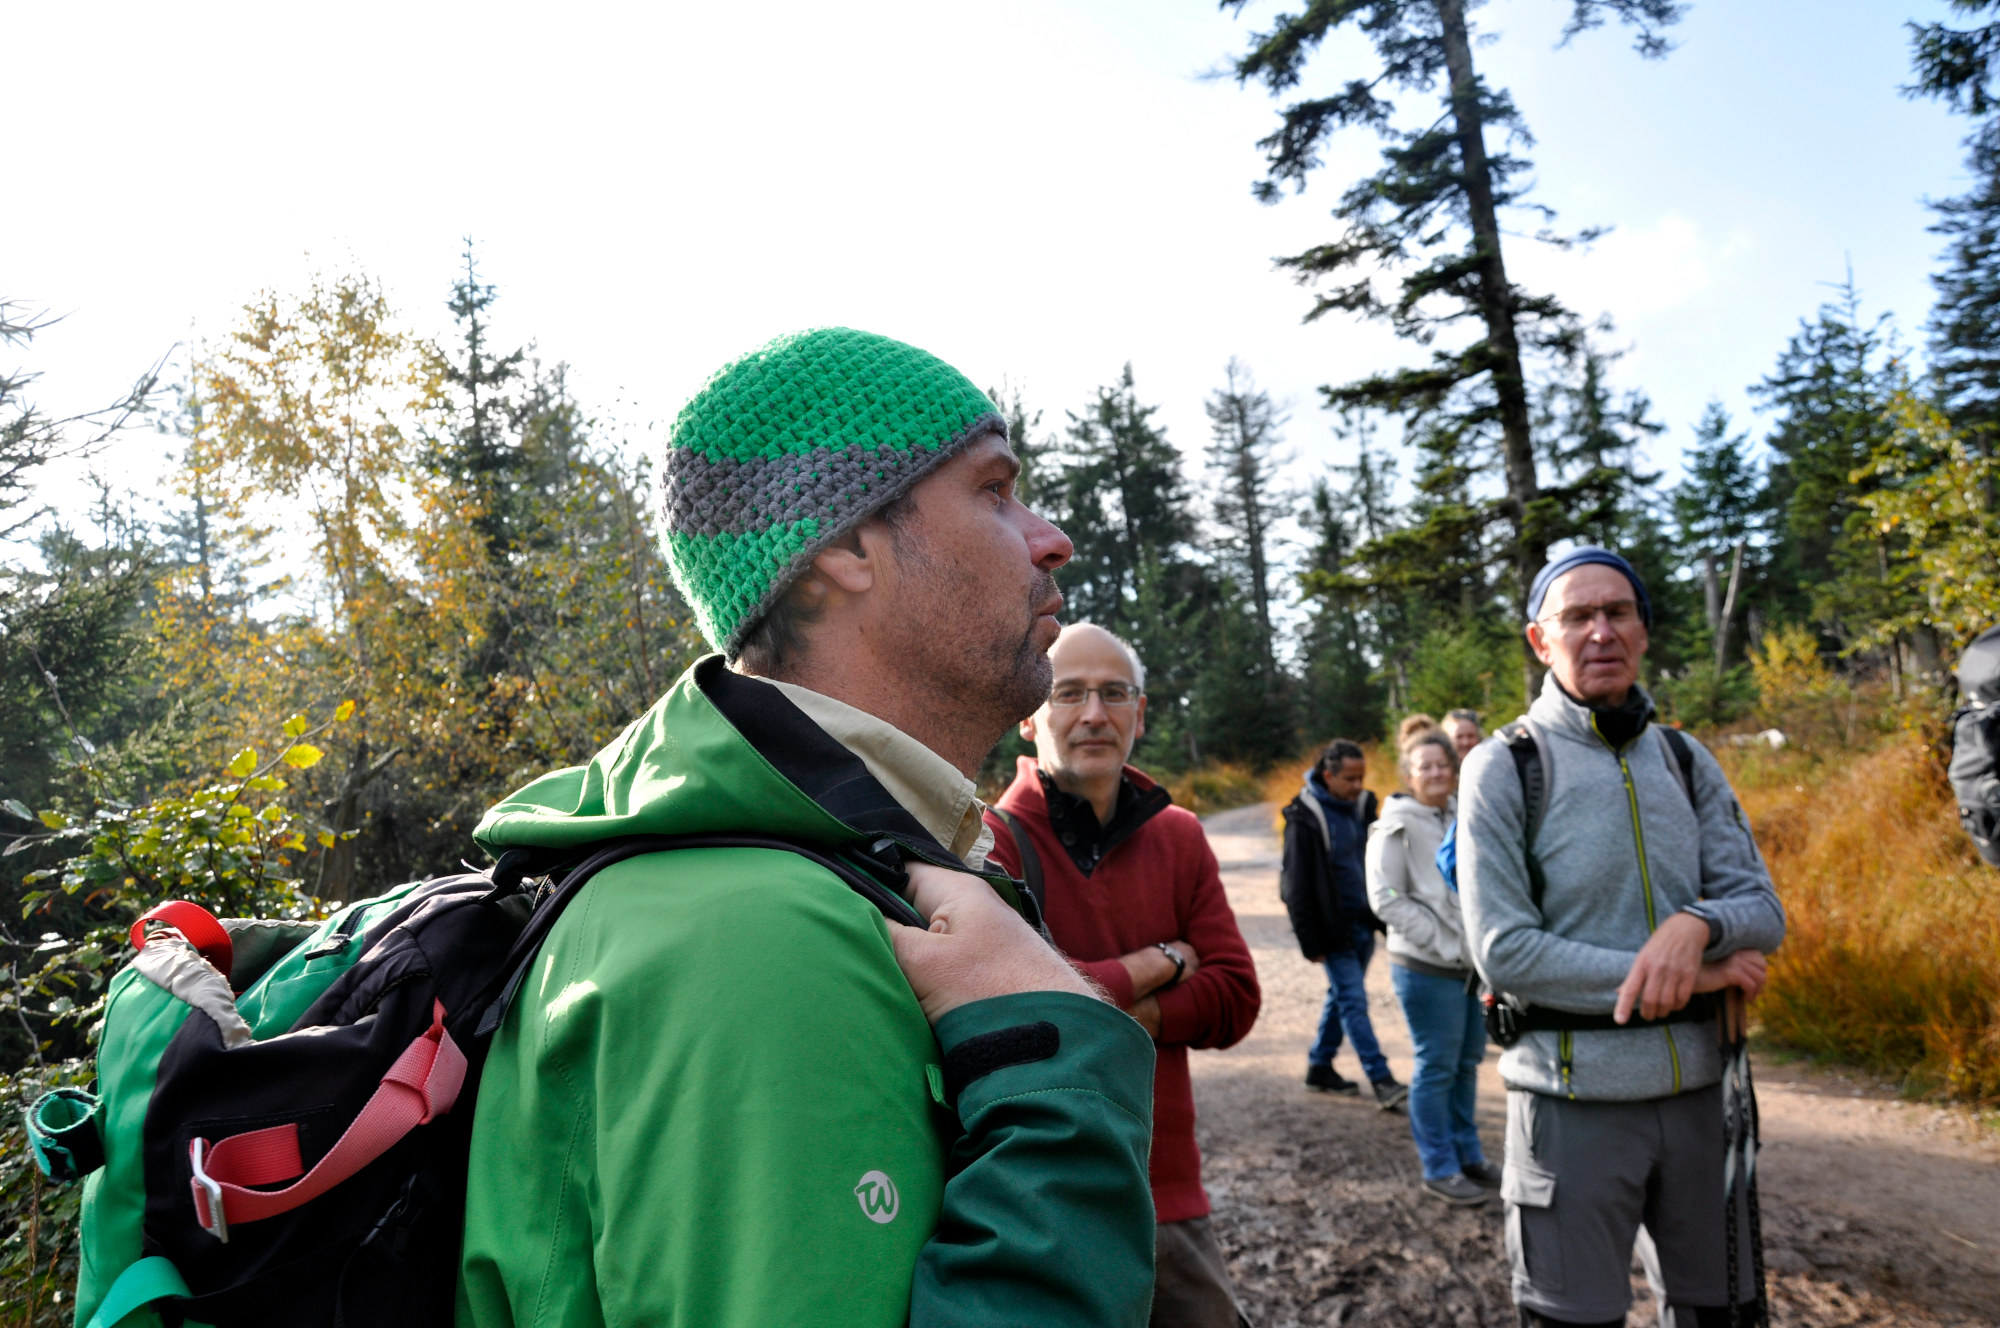 Ein Ranger mit bunter gehäkelter Mütze und herbstlich warmer, grüner Outdoorkleidung steht in einer Gruppe MEnschen und erklärt etwas.